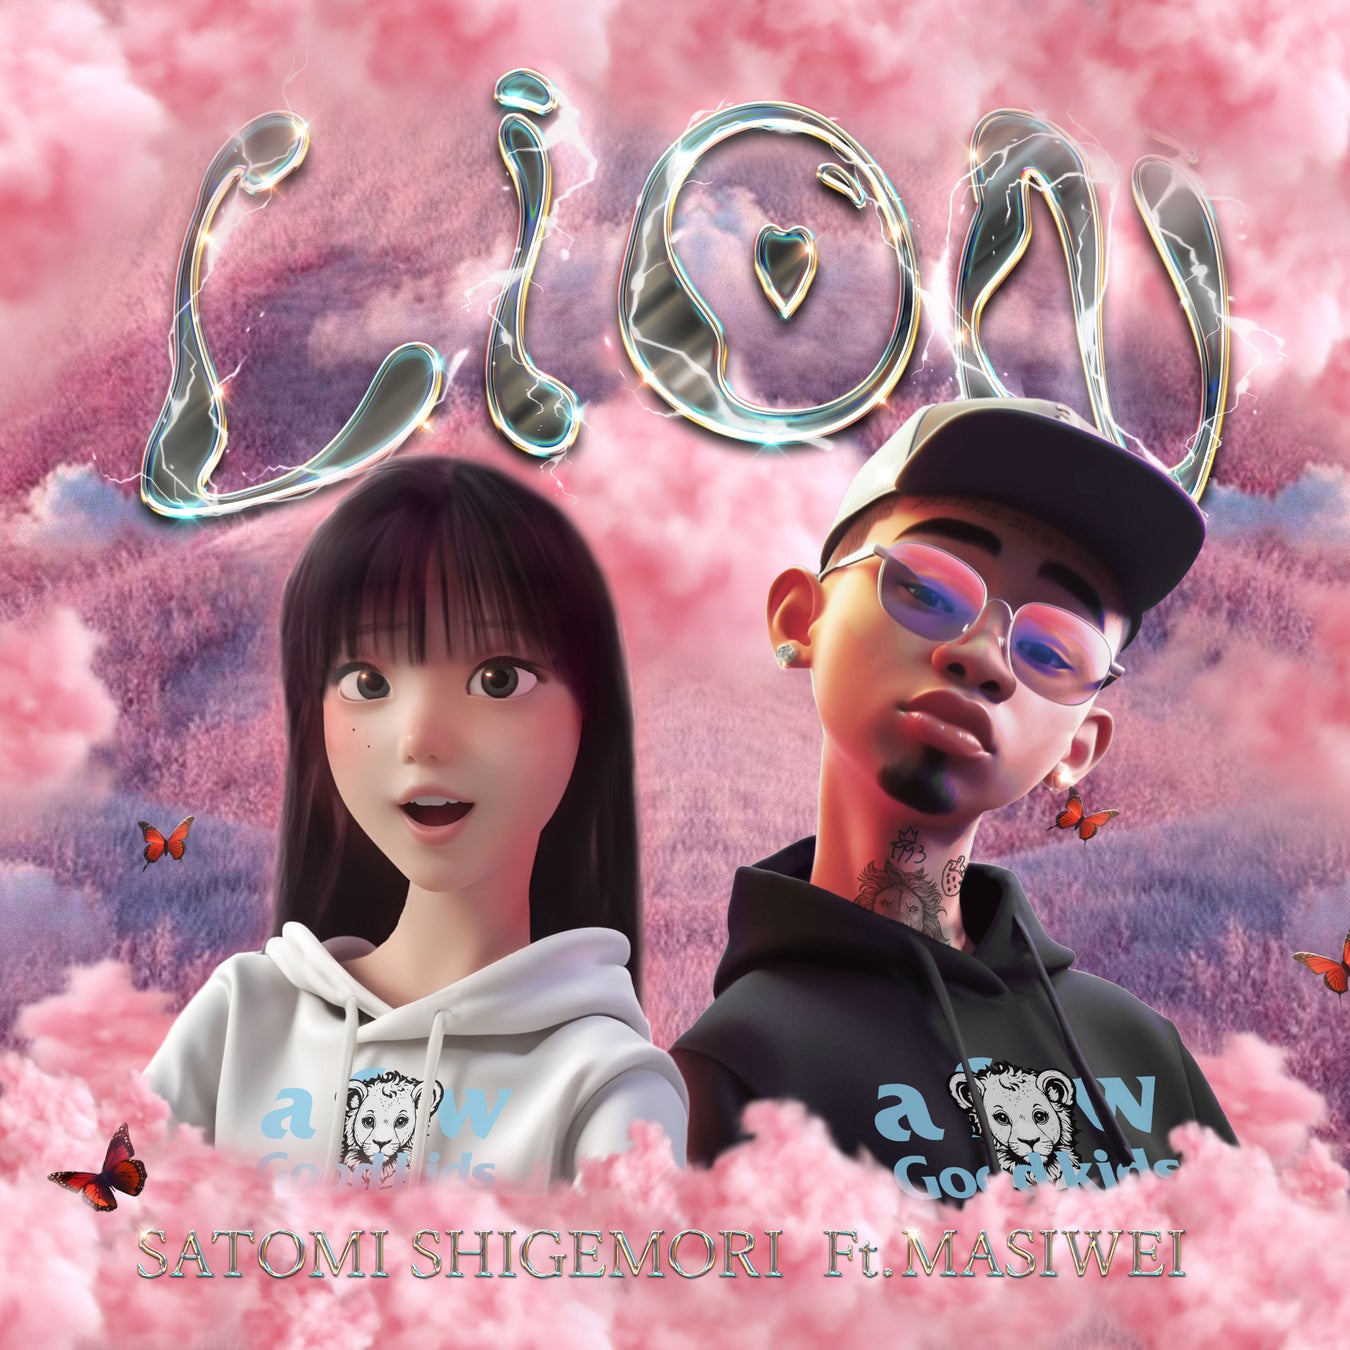 【重盛さと美 x Higher Brothers・Masiwei】コラボ楽曲 “LION (feat. Masiwei)” をリリース。